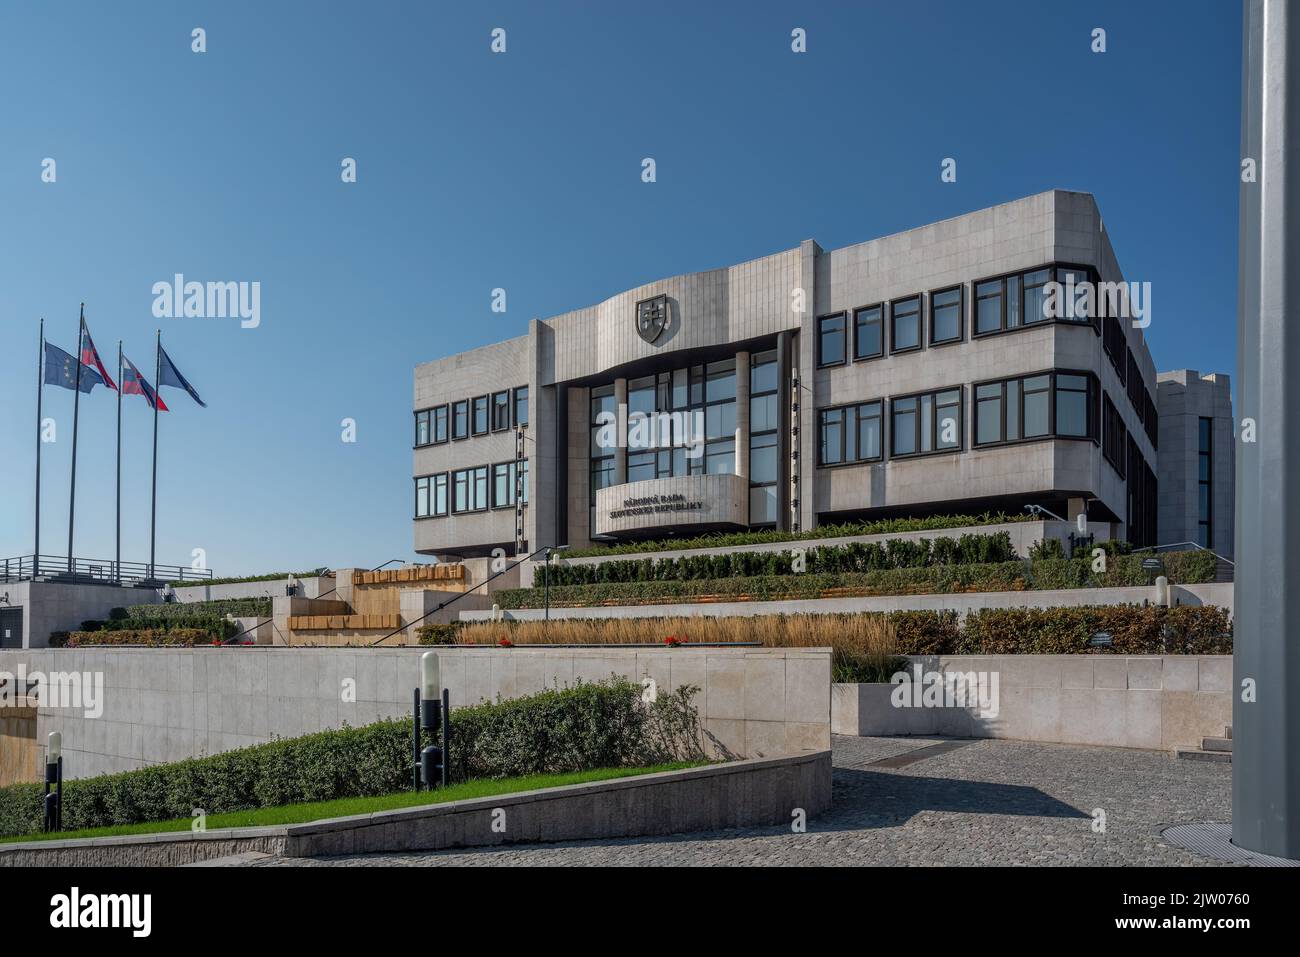 Consejo Nacional de la República Eslovaca - Parlamento de Eslovaquia - Bratislava, Eslovaquia Foto de stock